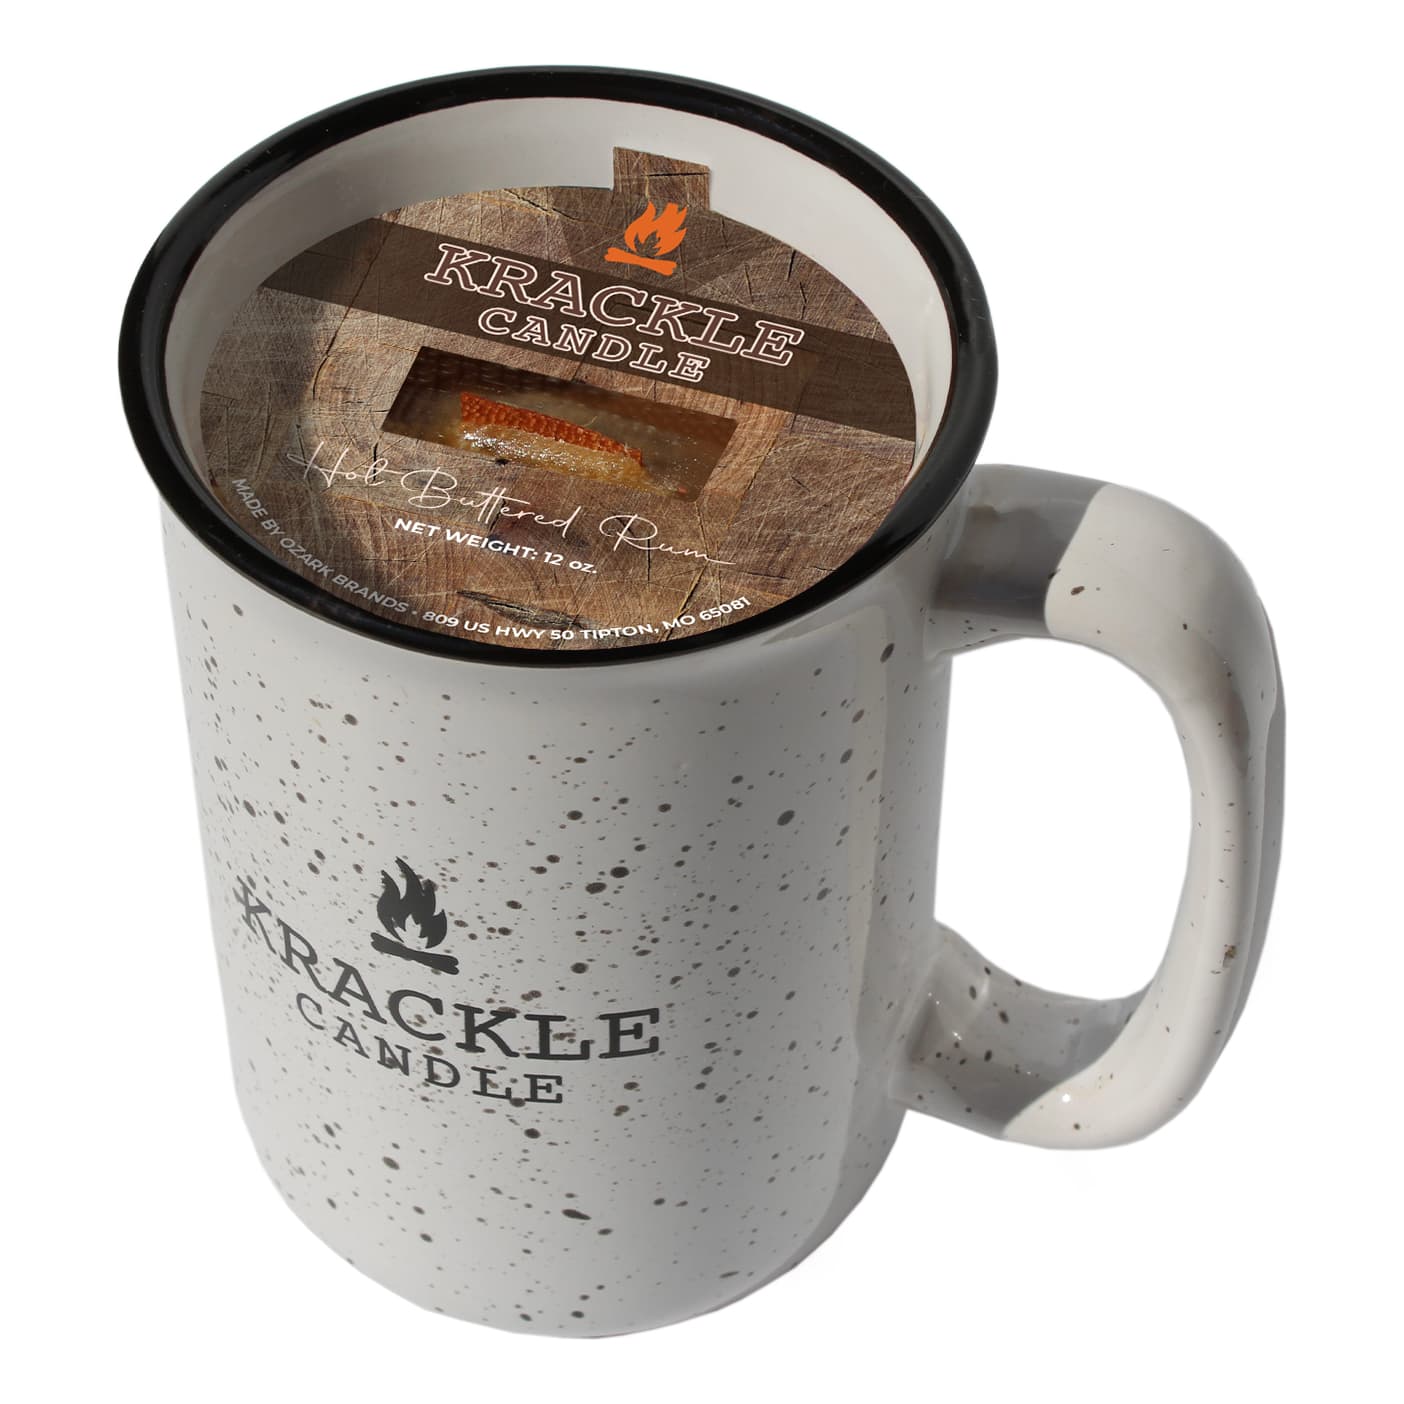 Krackle Campfire Mug Candle - Hot Buttered Rum 